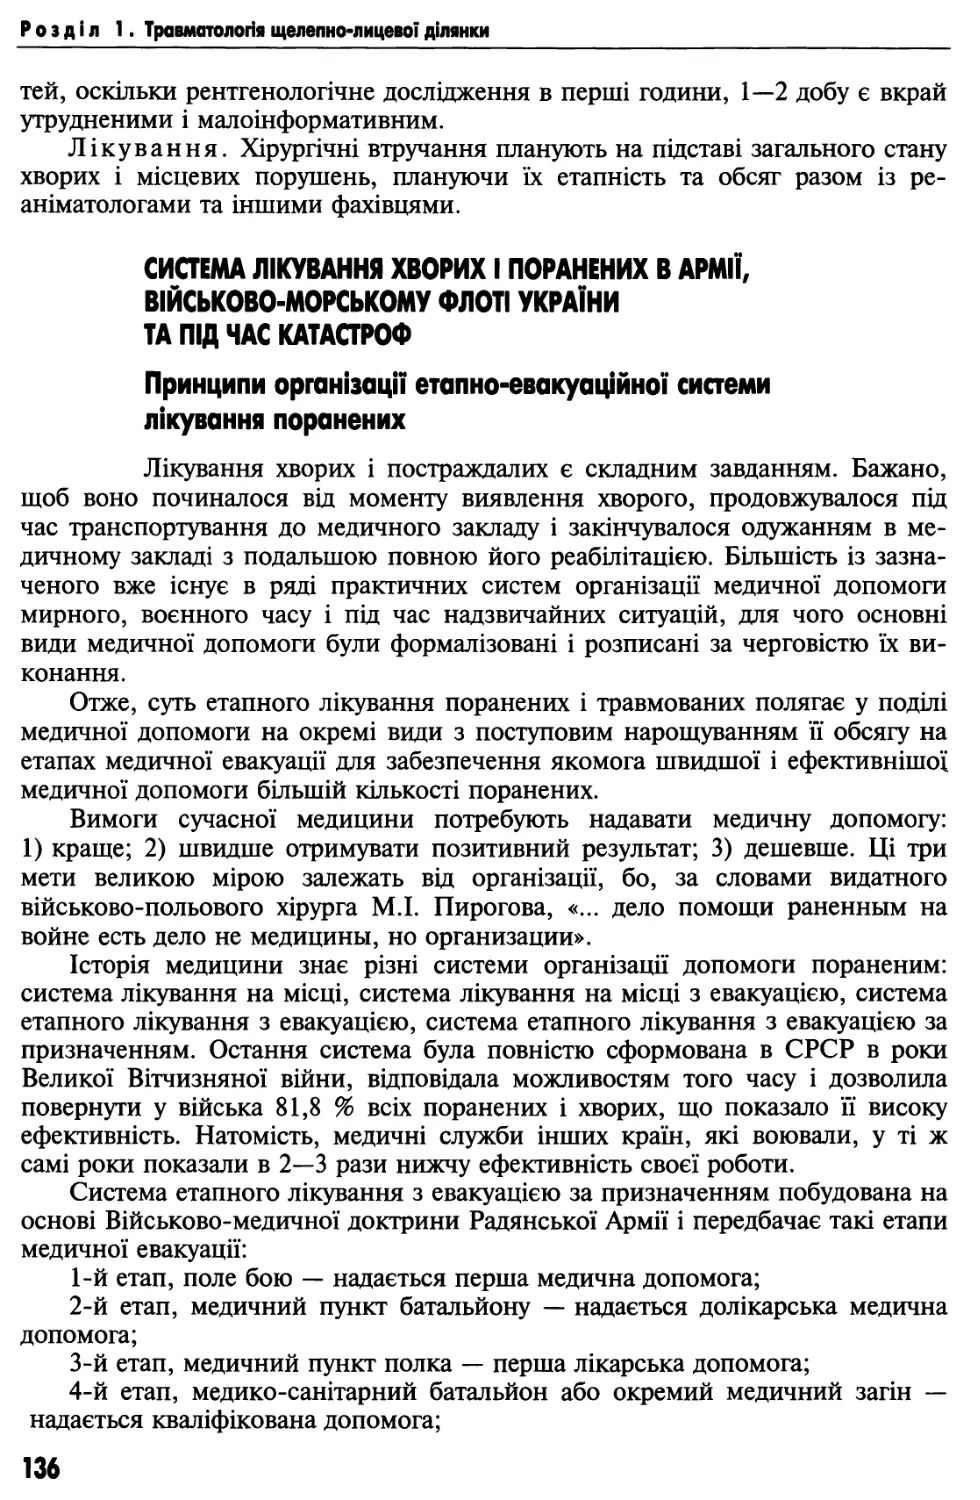 Система лікування хворих і поранених в армії України, Військово-морському флоті та під час катастроф